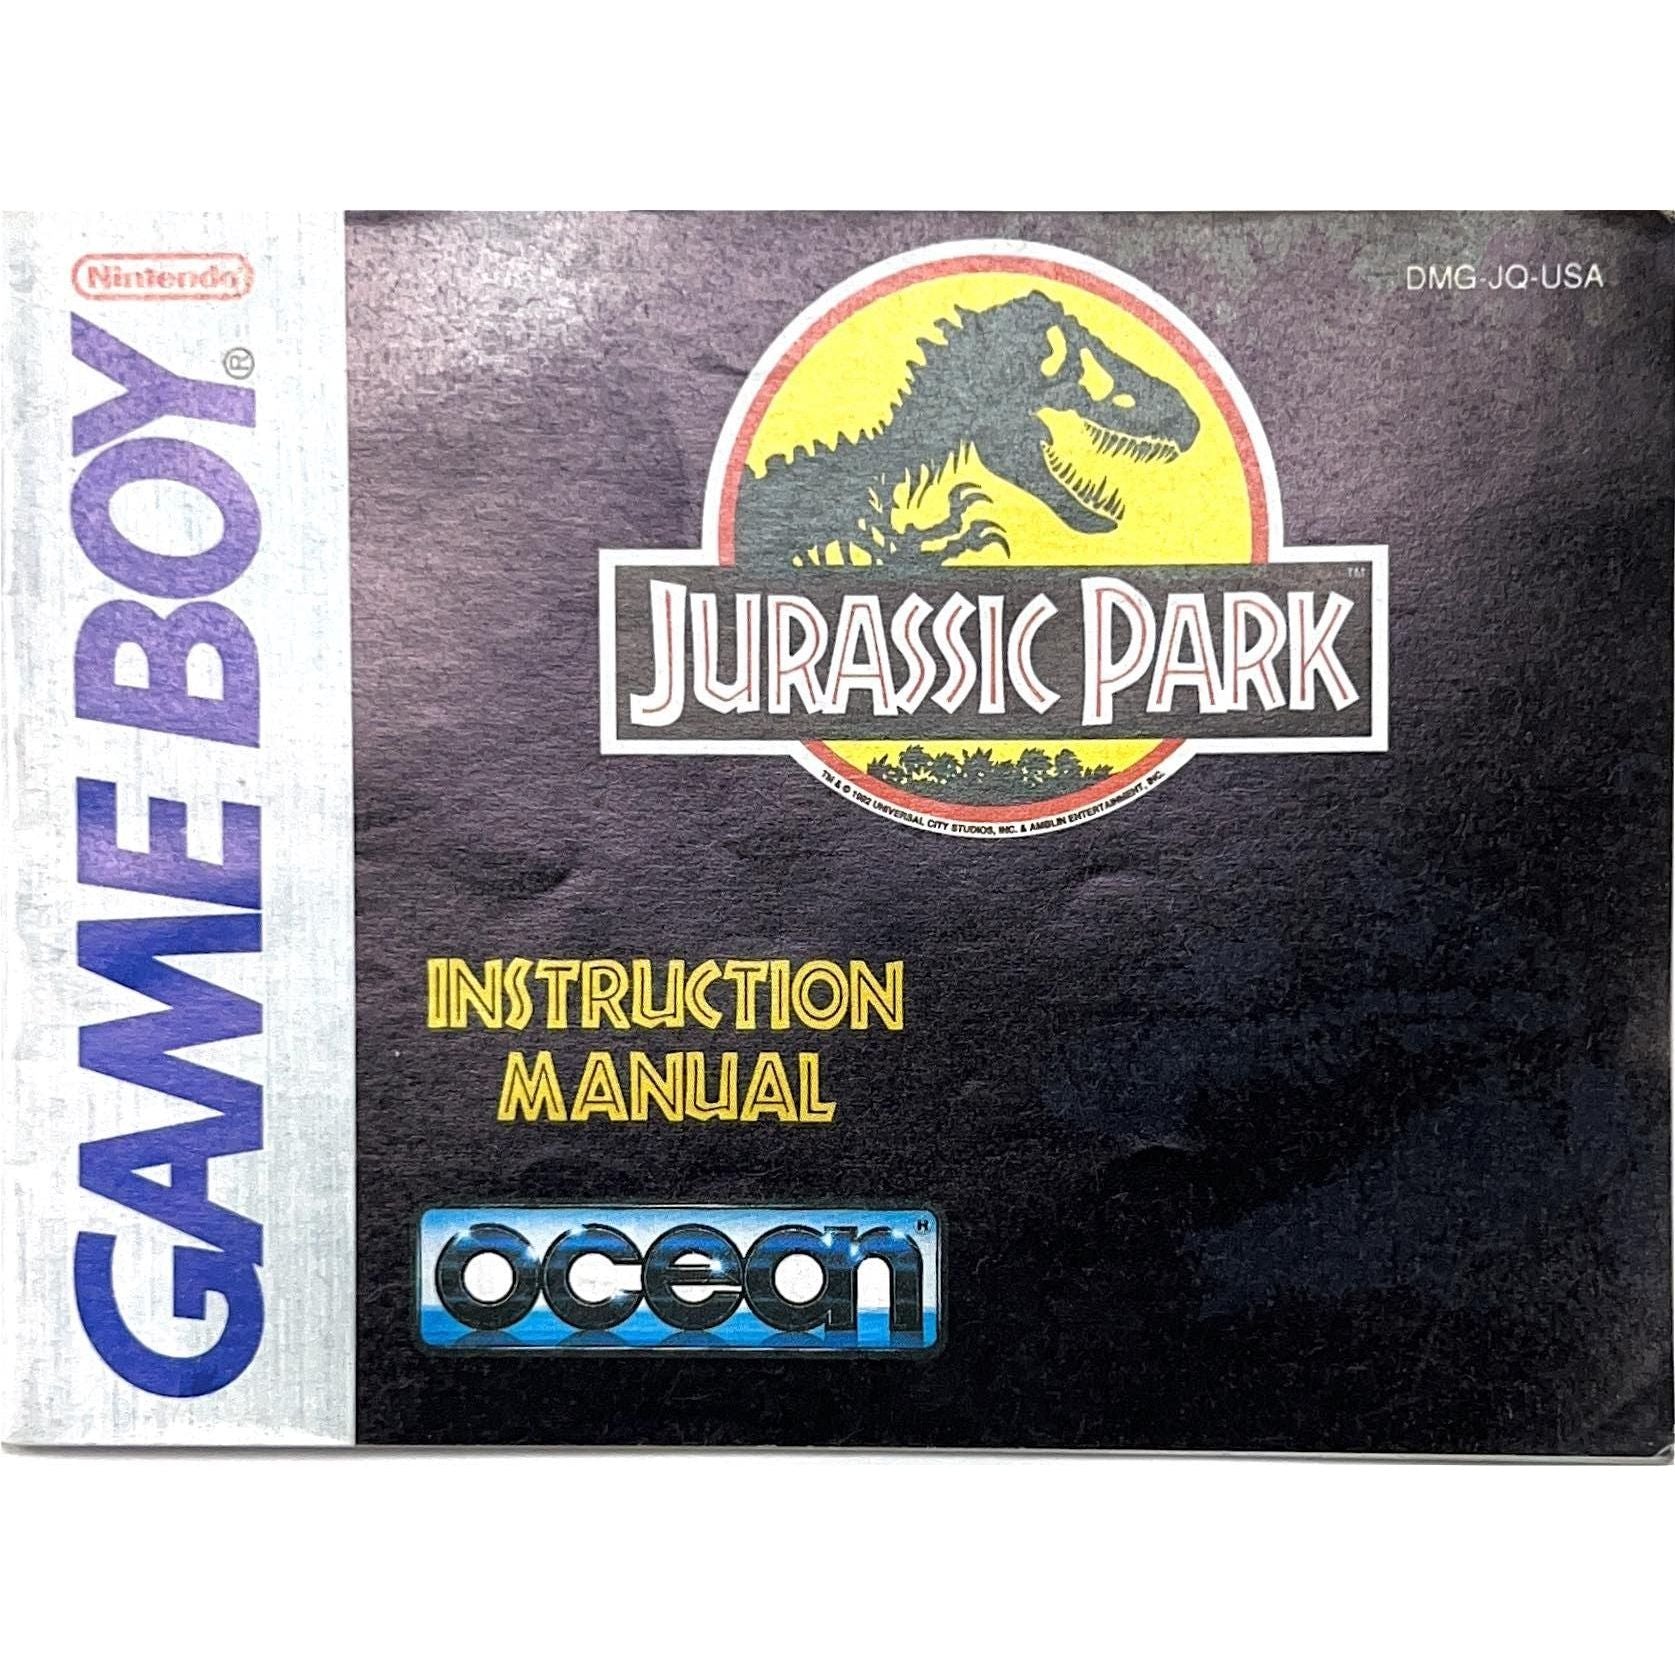 GB - Jurassic Park (Manual)